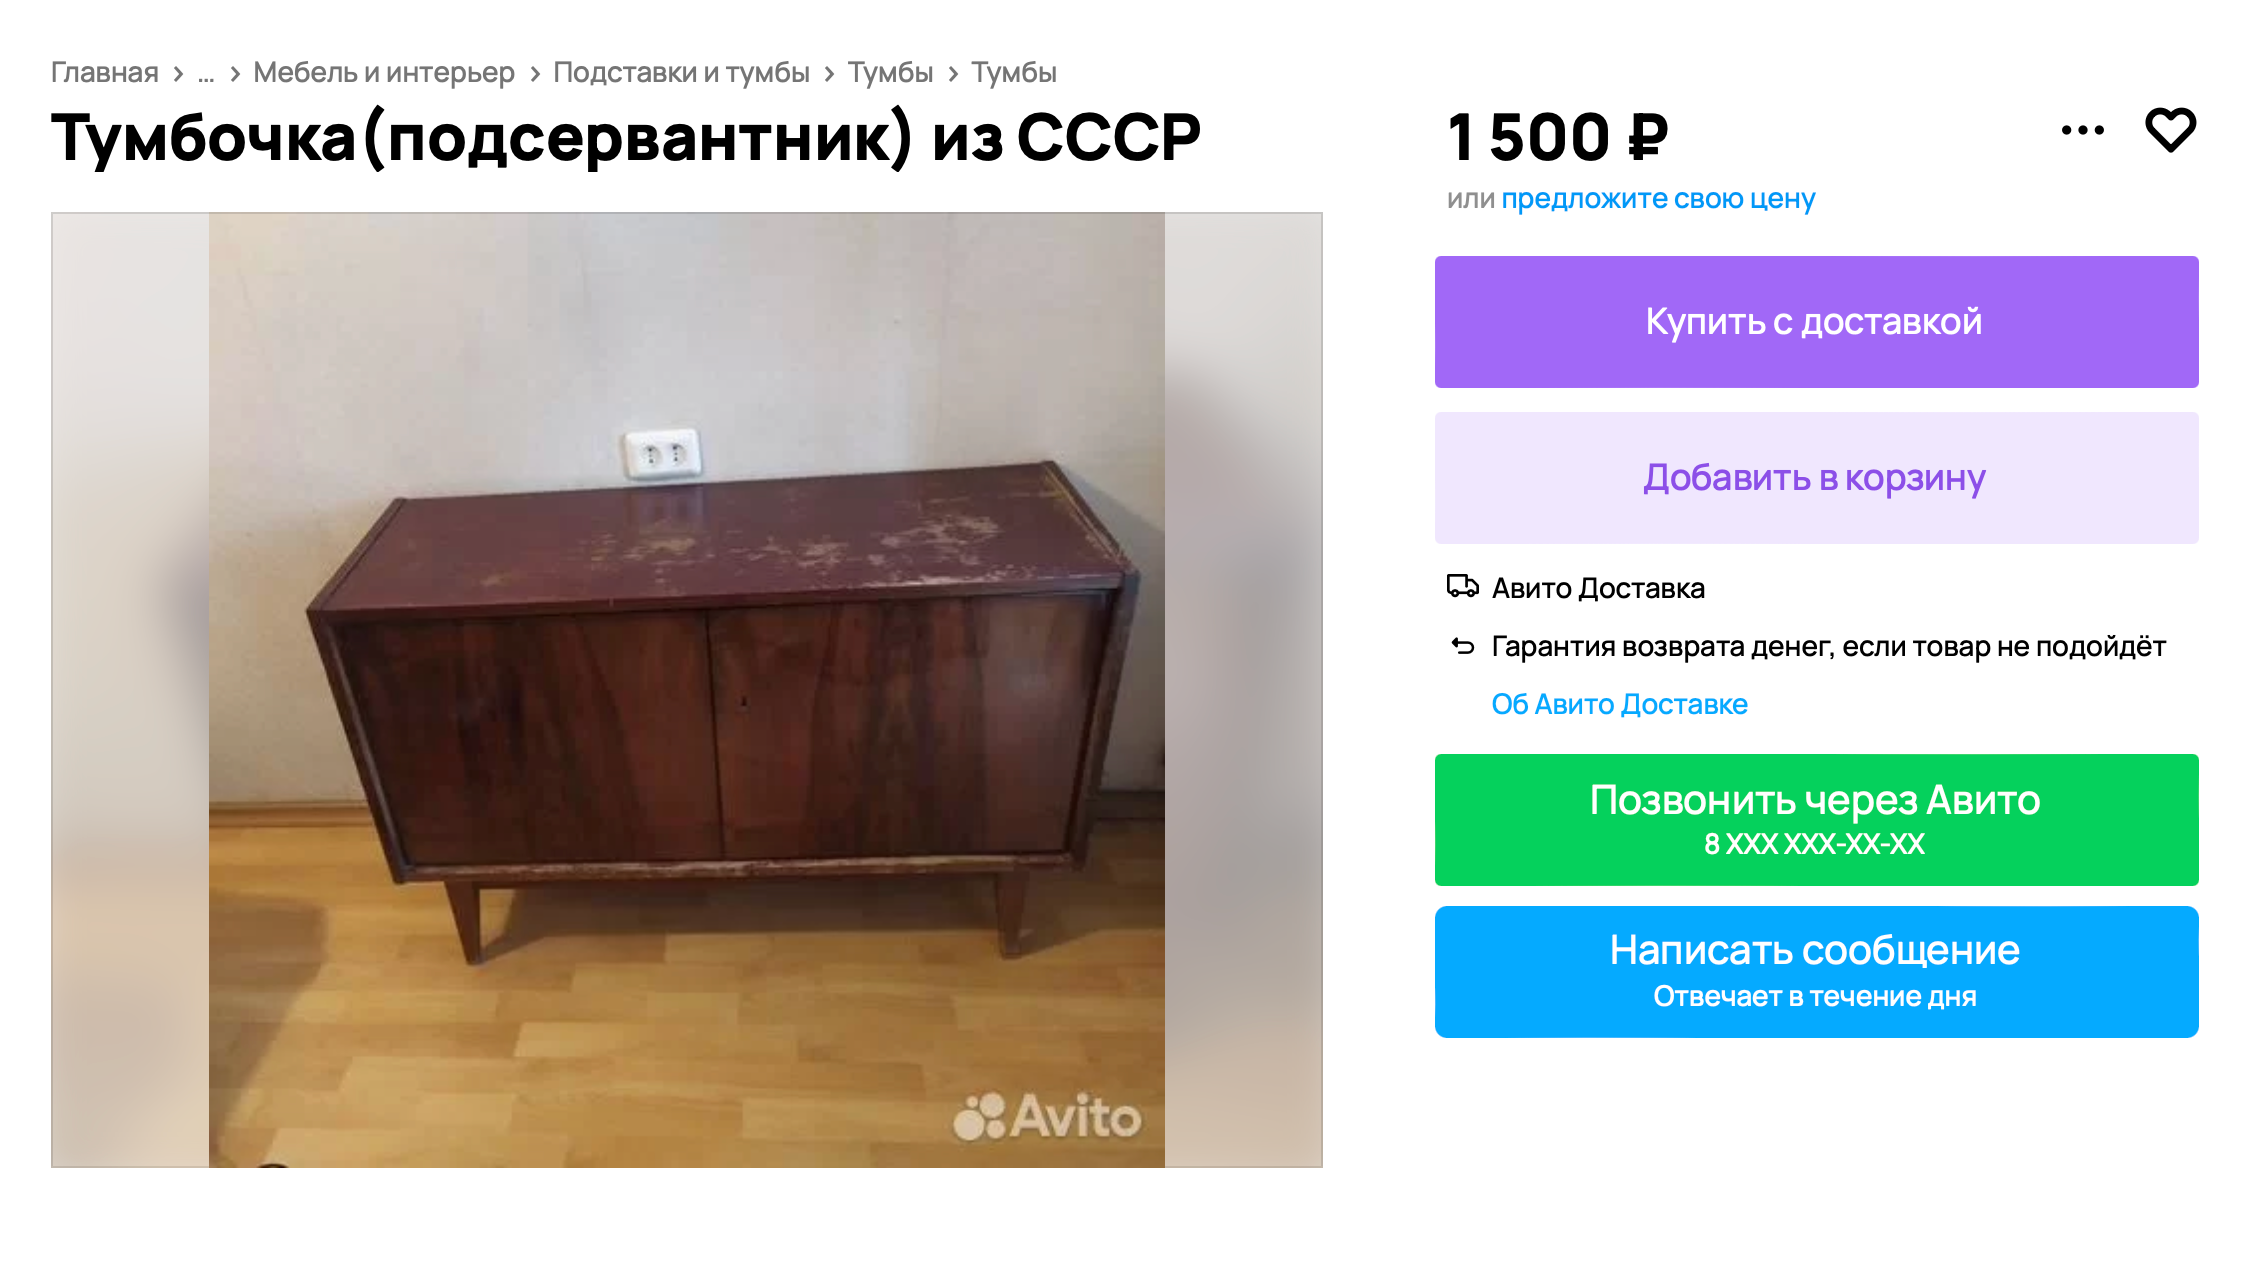 Если привести тумбу в порядок, ее можно продать значительно дороже, но на реставрацию уйдет много времени, сил и денег. Источник: avito.ru